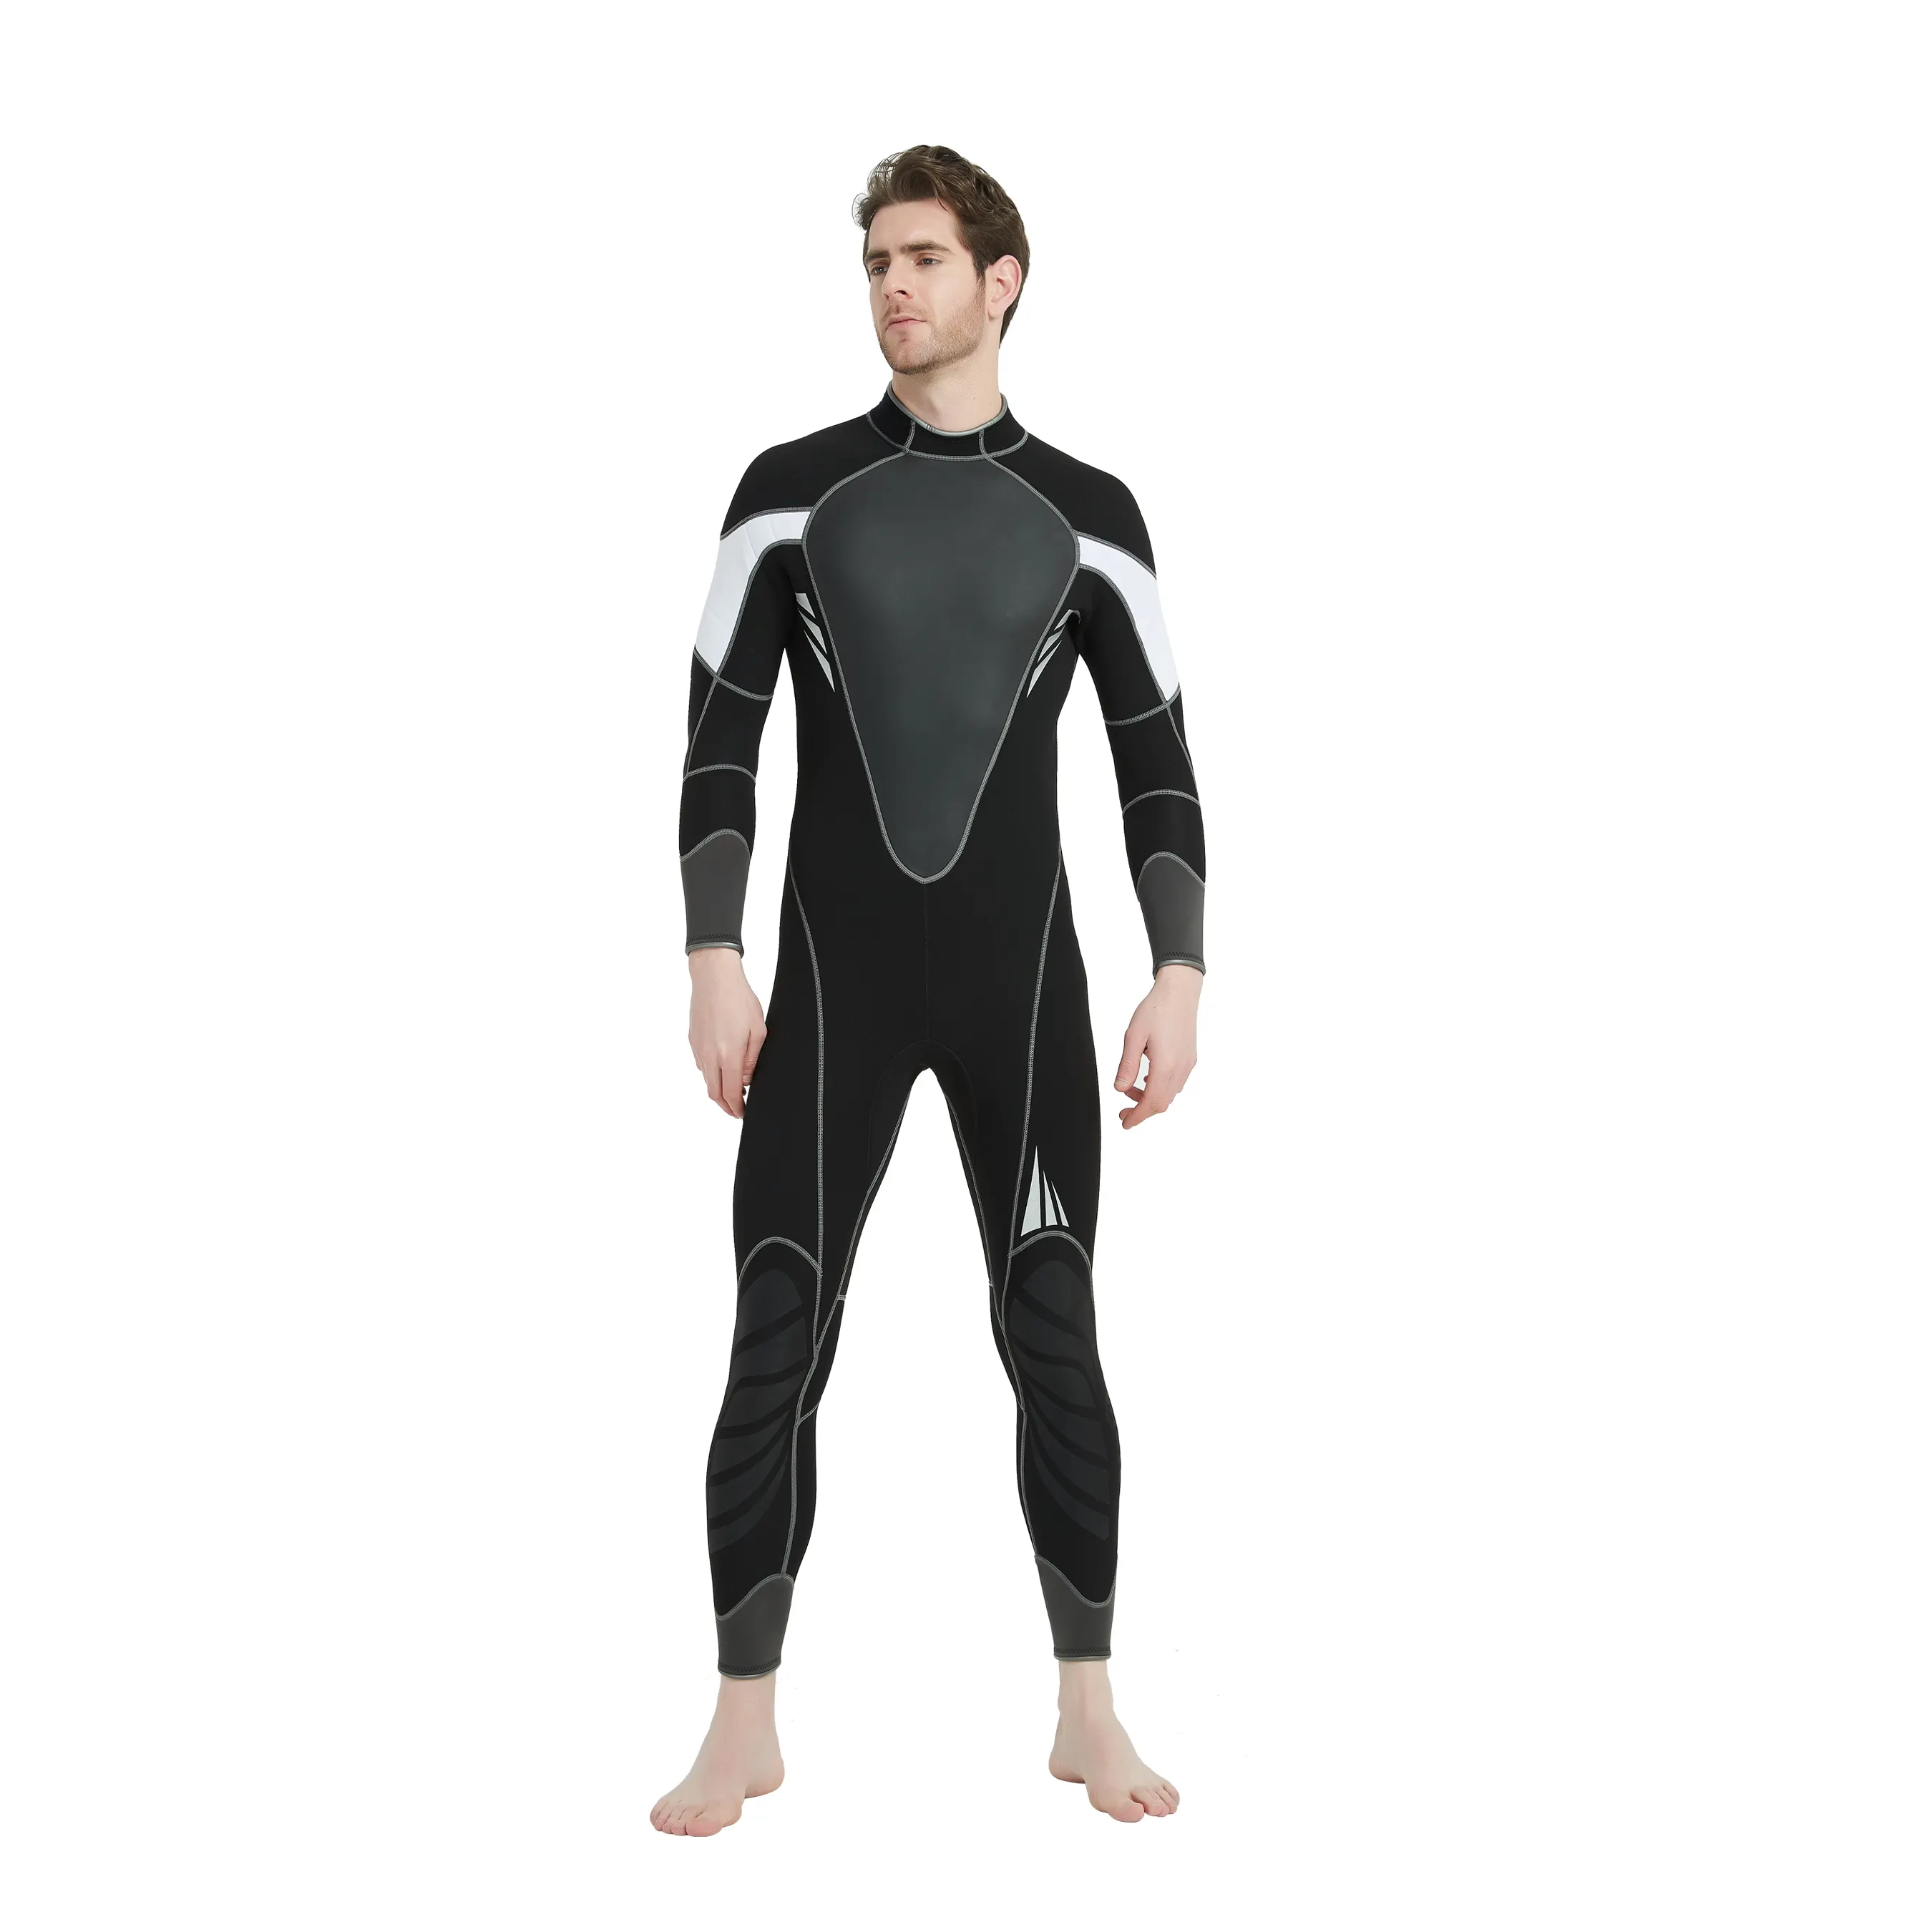 पूर्ण 3mm सर्फिंग सूट डाइविंग स्नॉर्कलिंग स्विमिंग jumpsuit wetsuit 3mm neoprene wetsuit के लिए पुरुषों